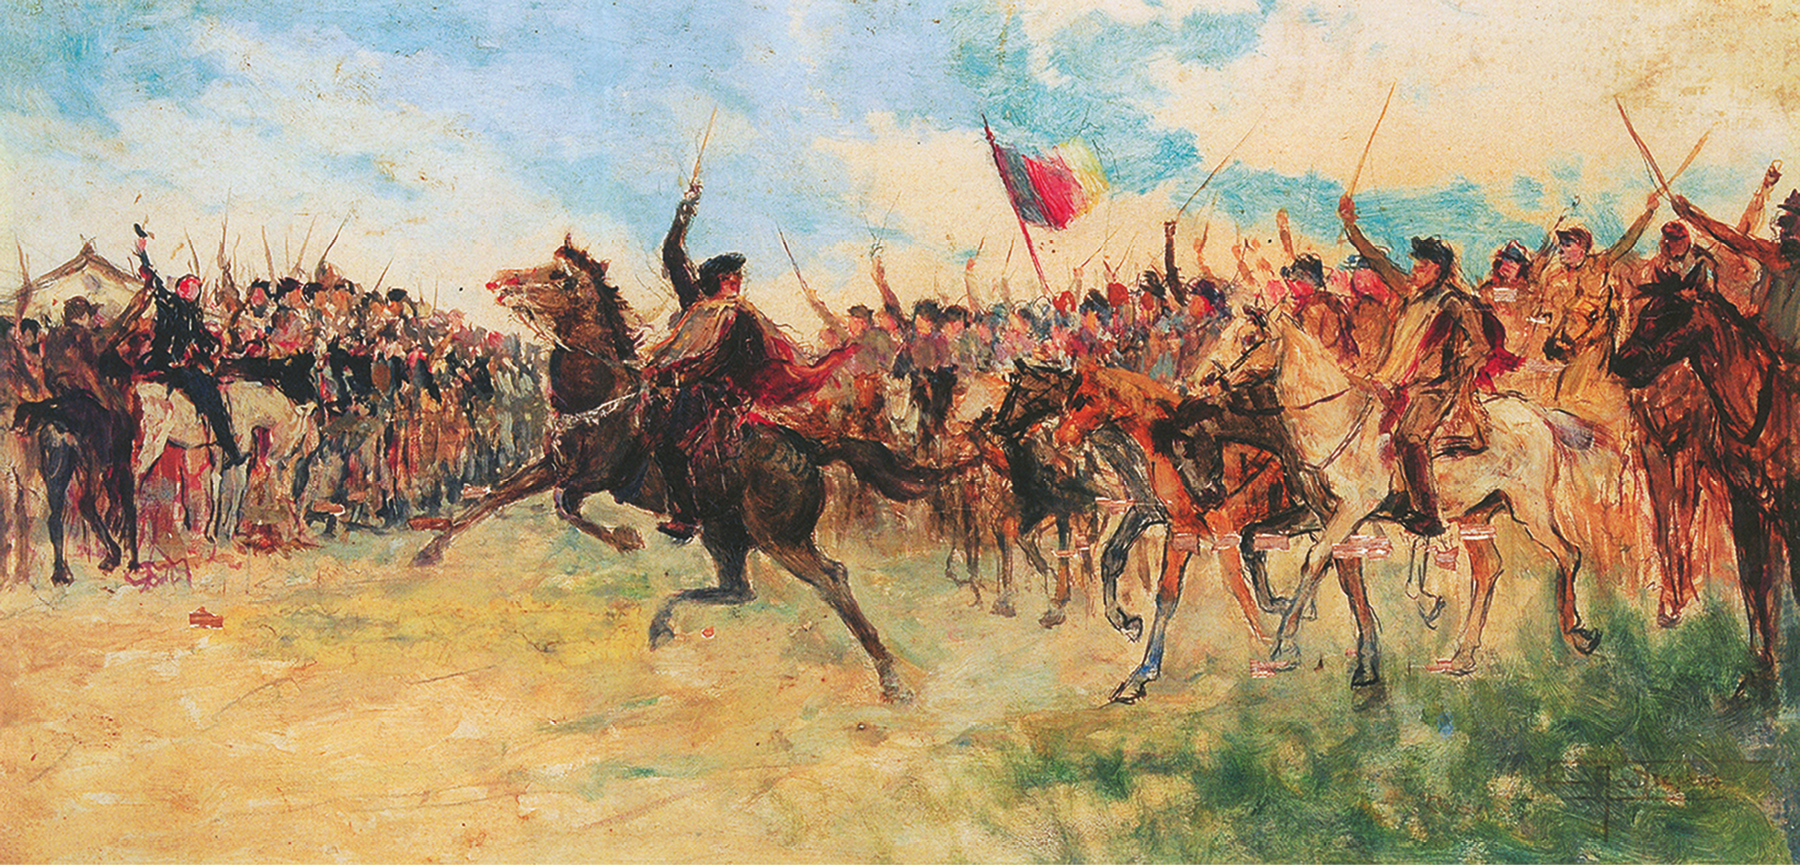 Pintura. Centralizado, uma pessoa, usando chapéu e capa marrom, está em cima de um cavalo, levantando uma espada. Ao redor, pessoas montadas em cavalos com espadas levantadas. Entre elas, há uma bandeira hasteada.